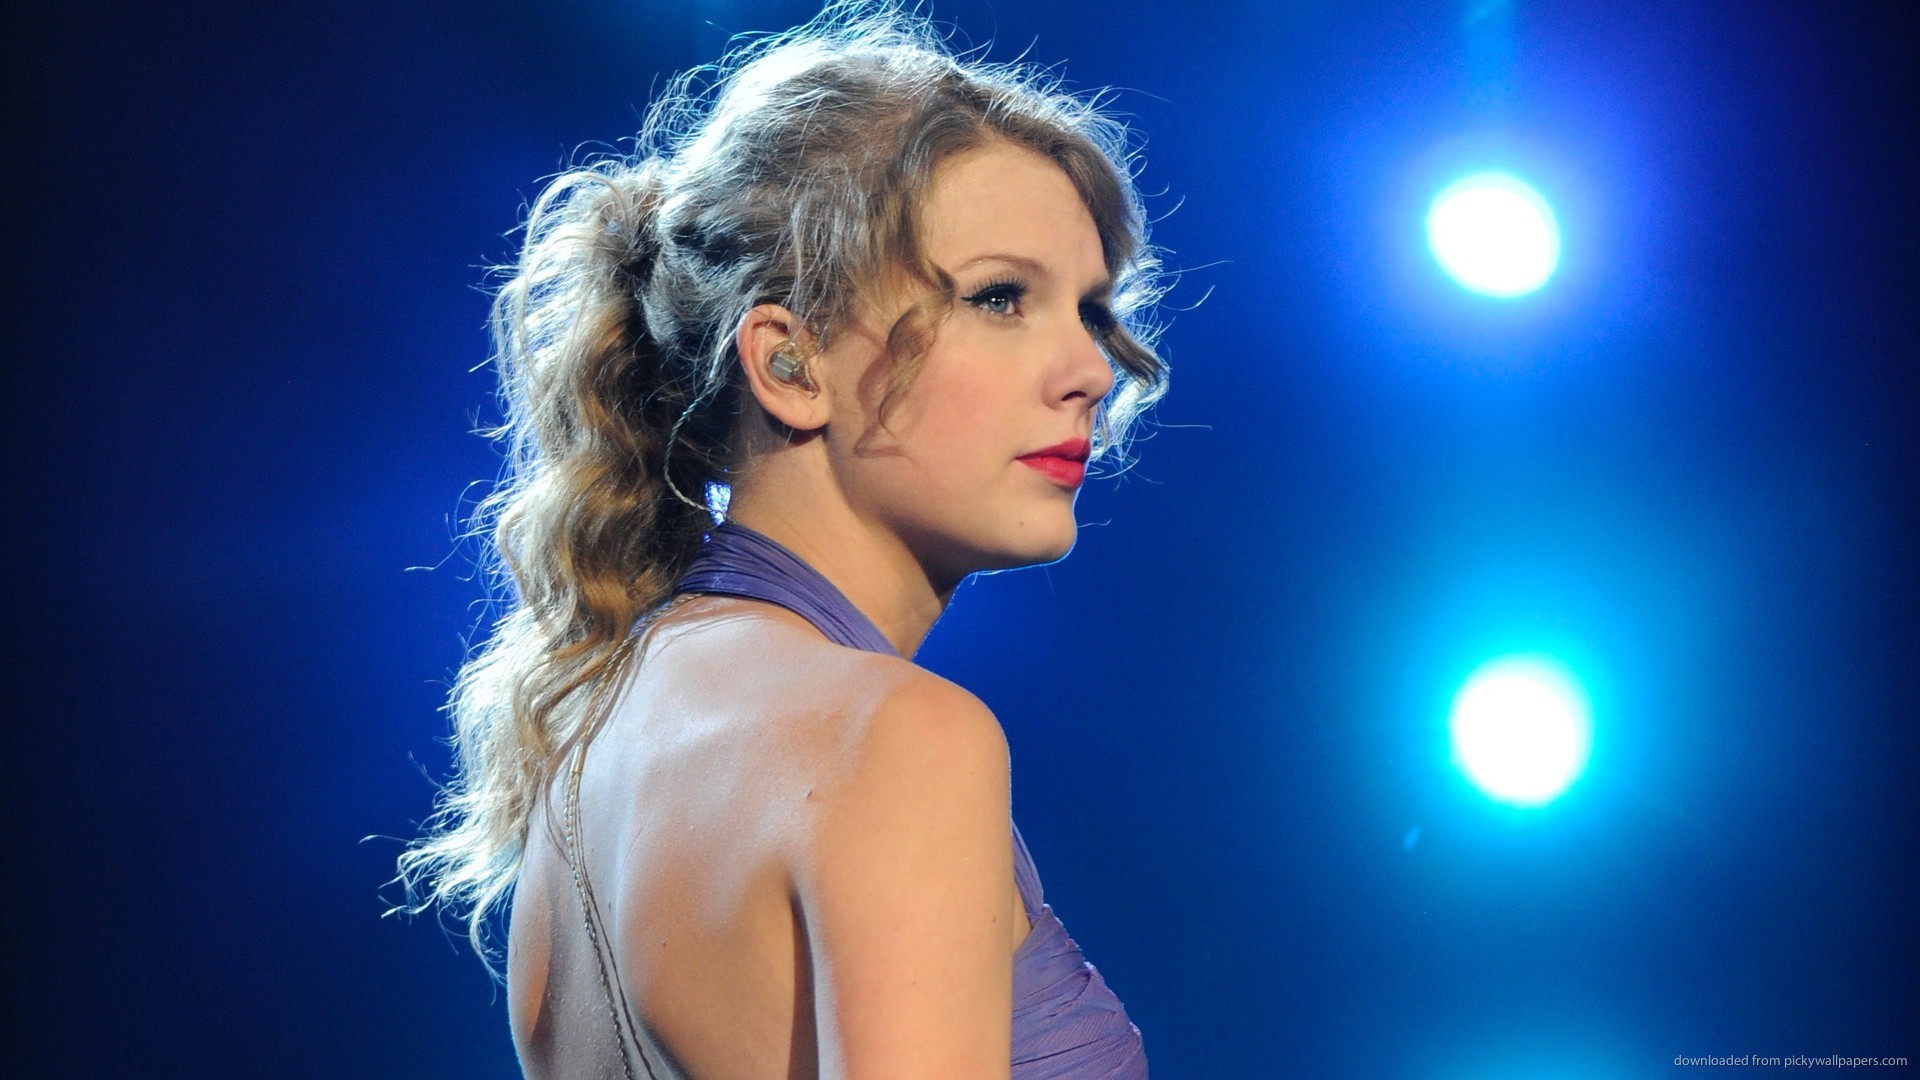 Australia se prepara para el "Swiftposio", un simposio sobre el impacto global de Taylor Swift.